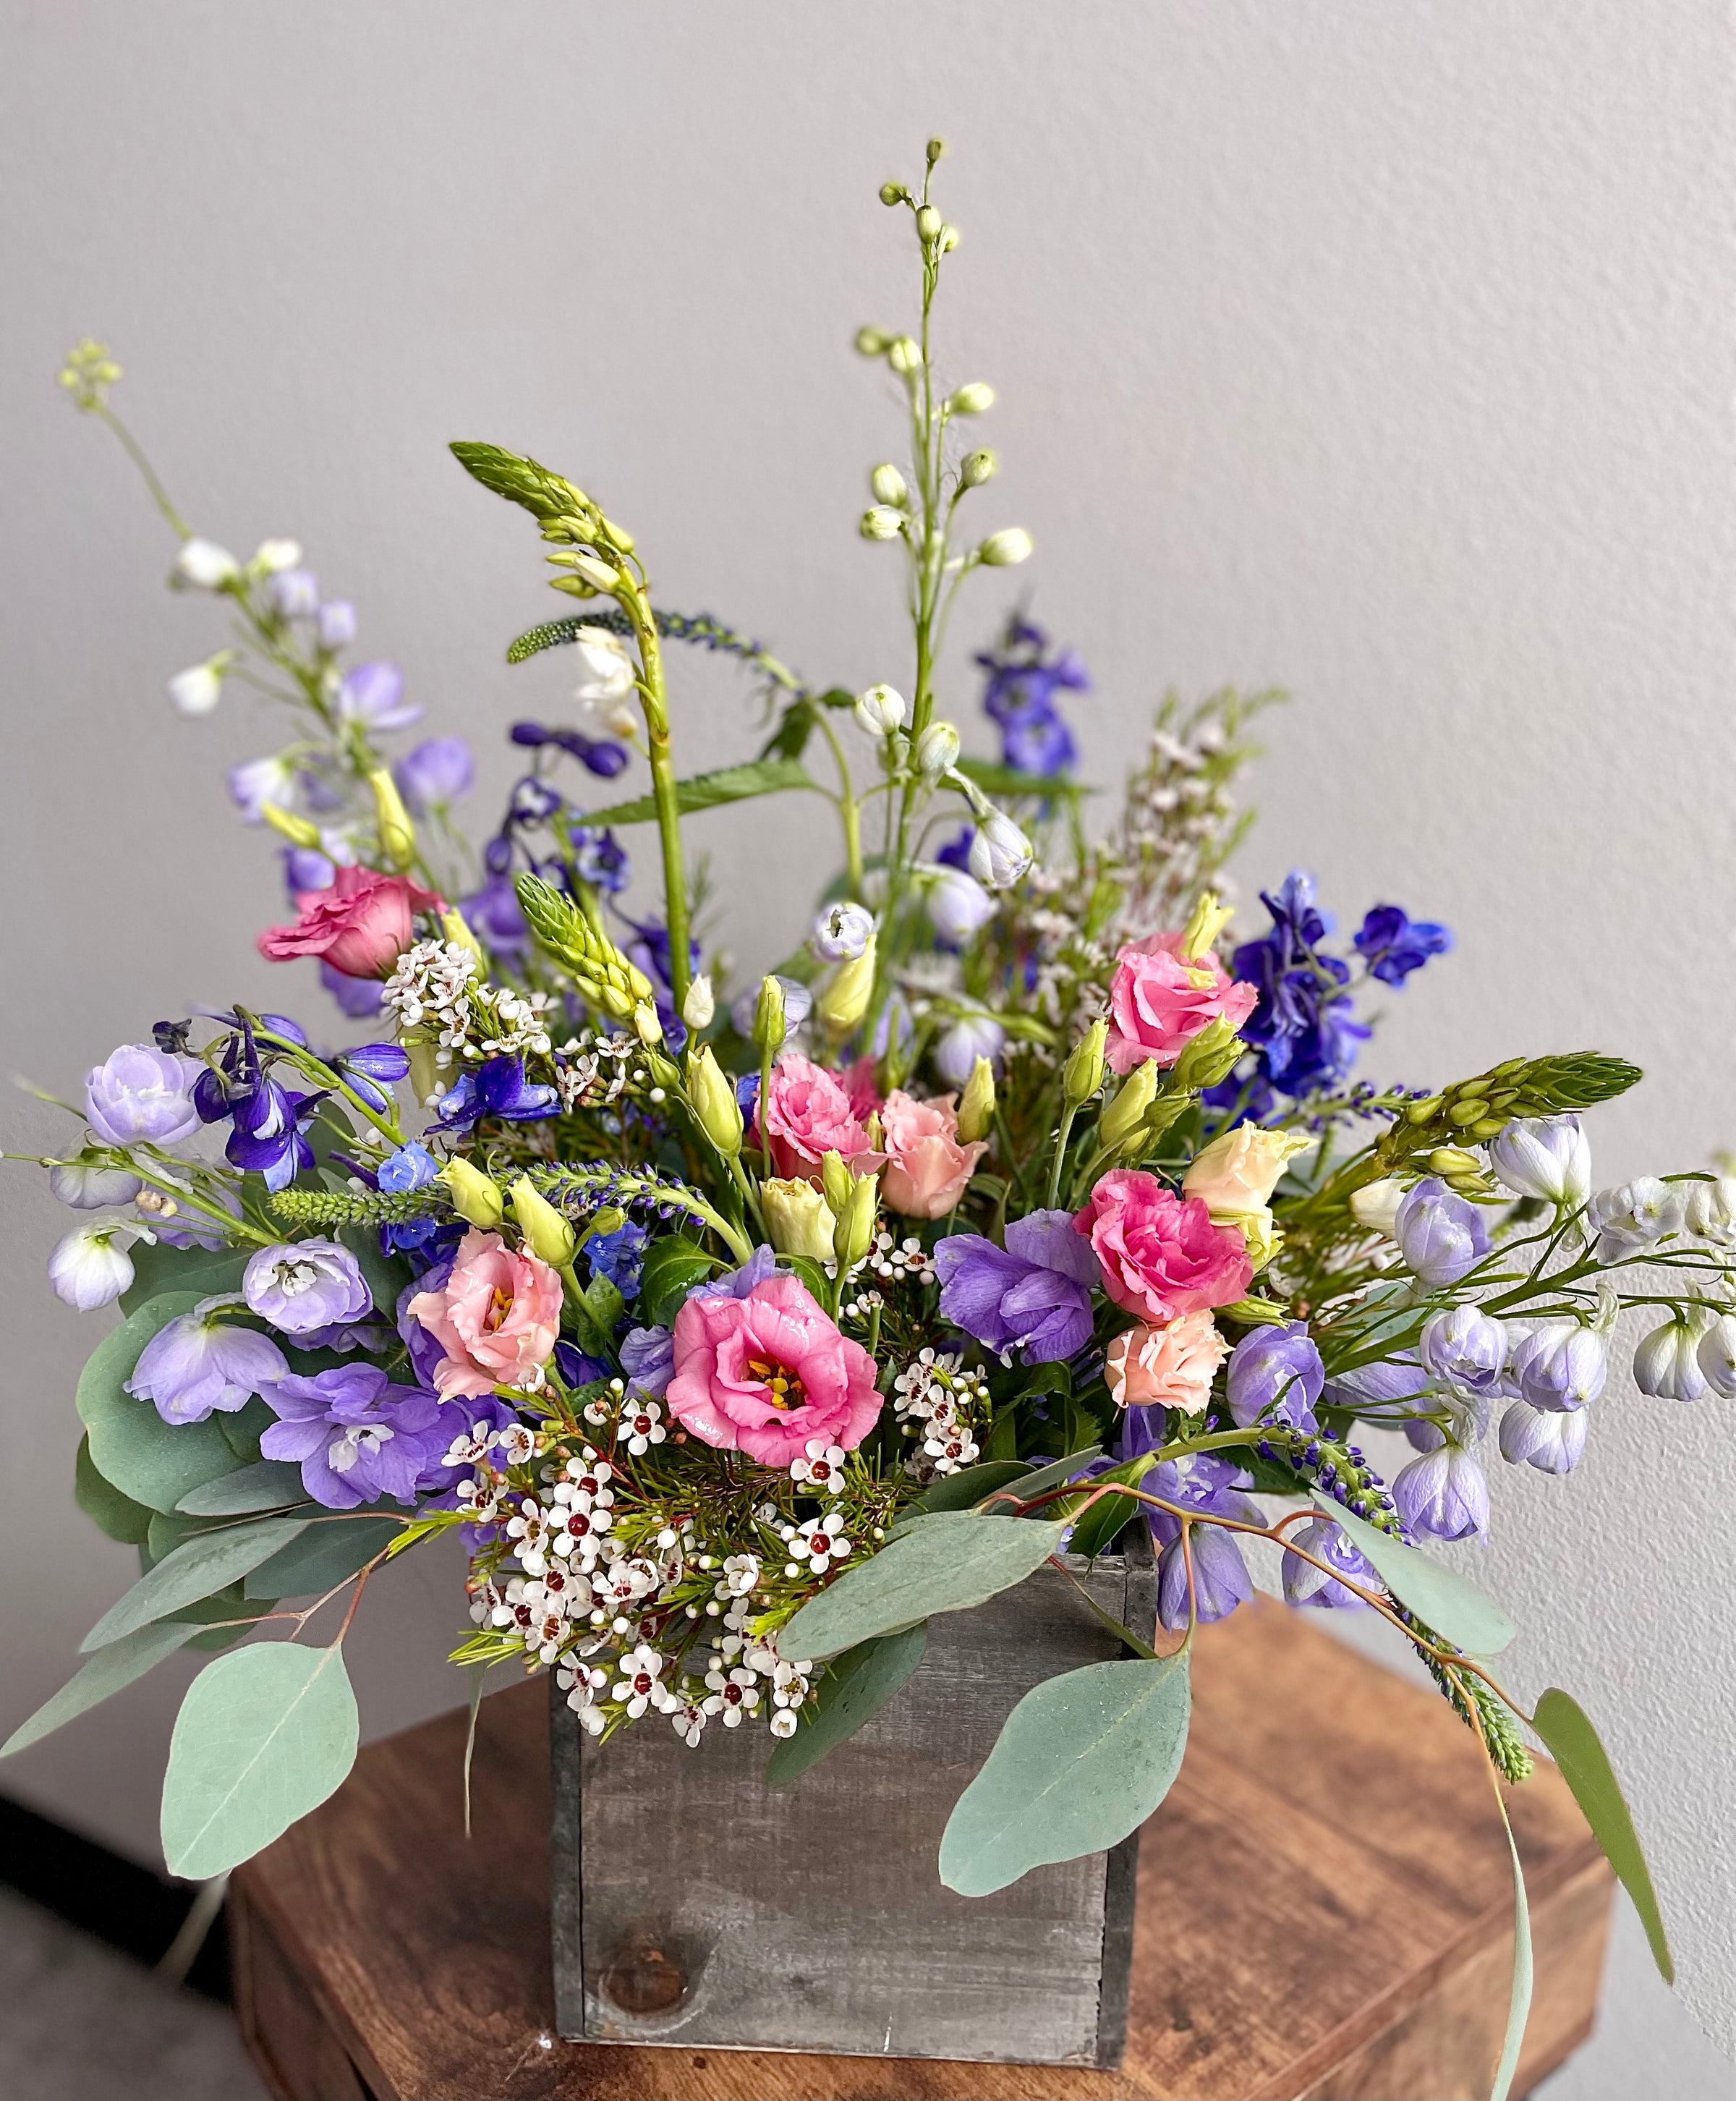 Orillia Florist: Florillia Floral Design - Flower Delivery in ON